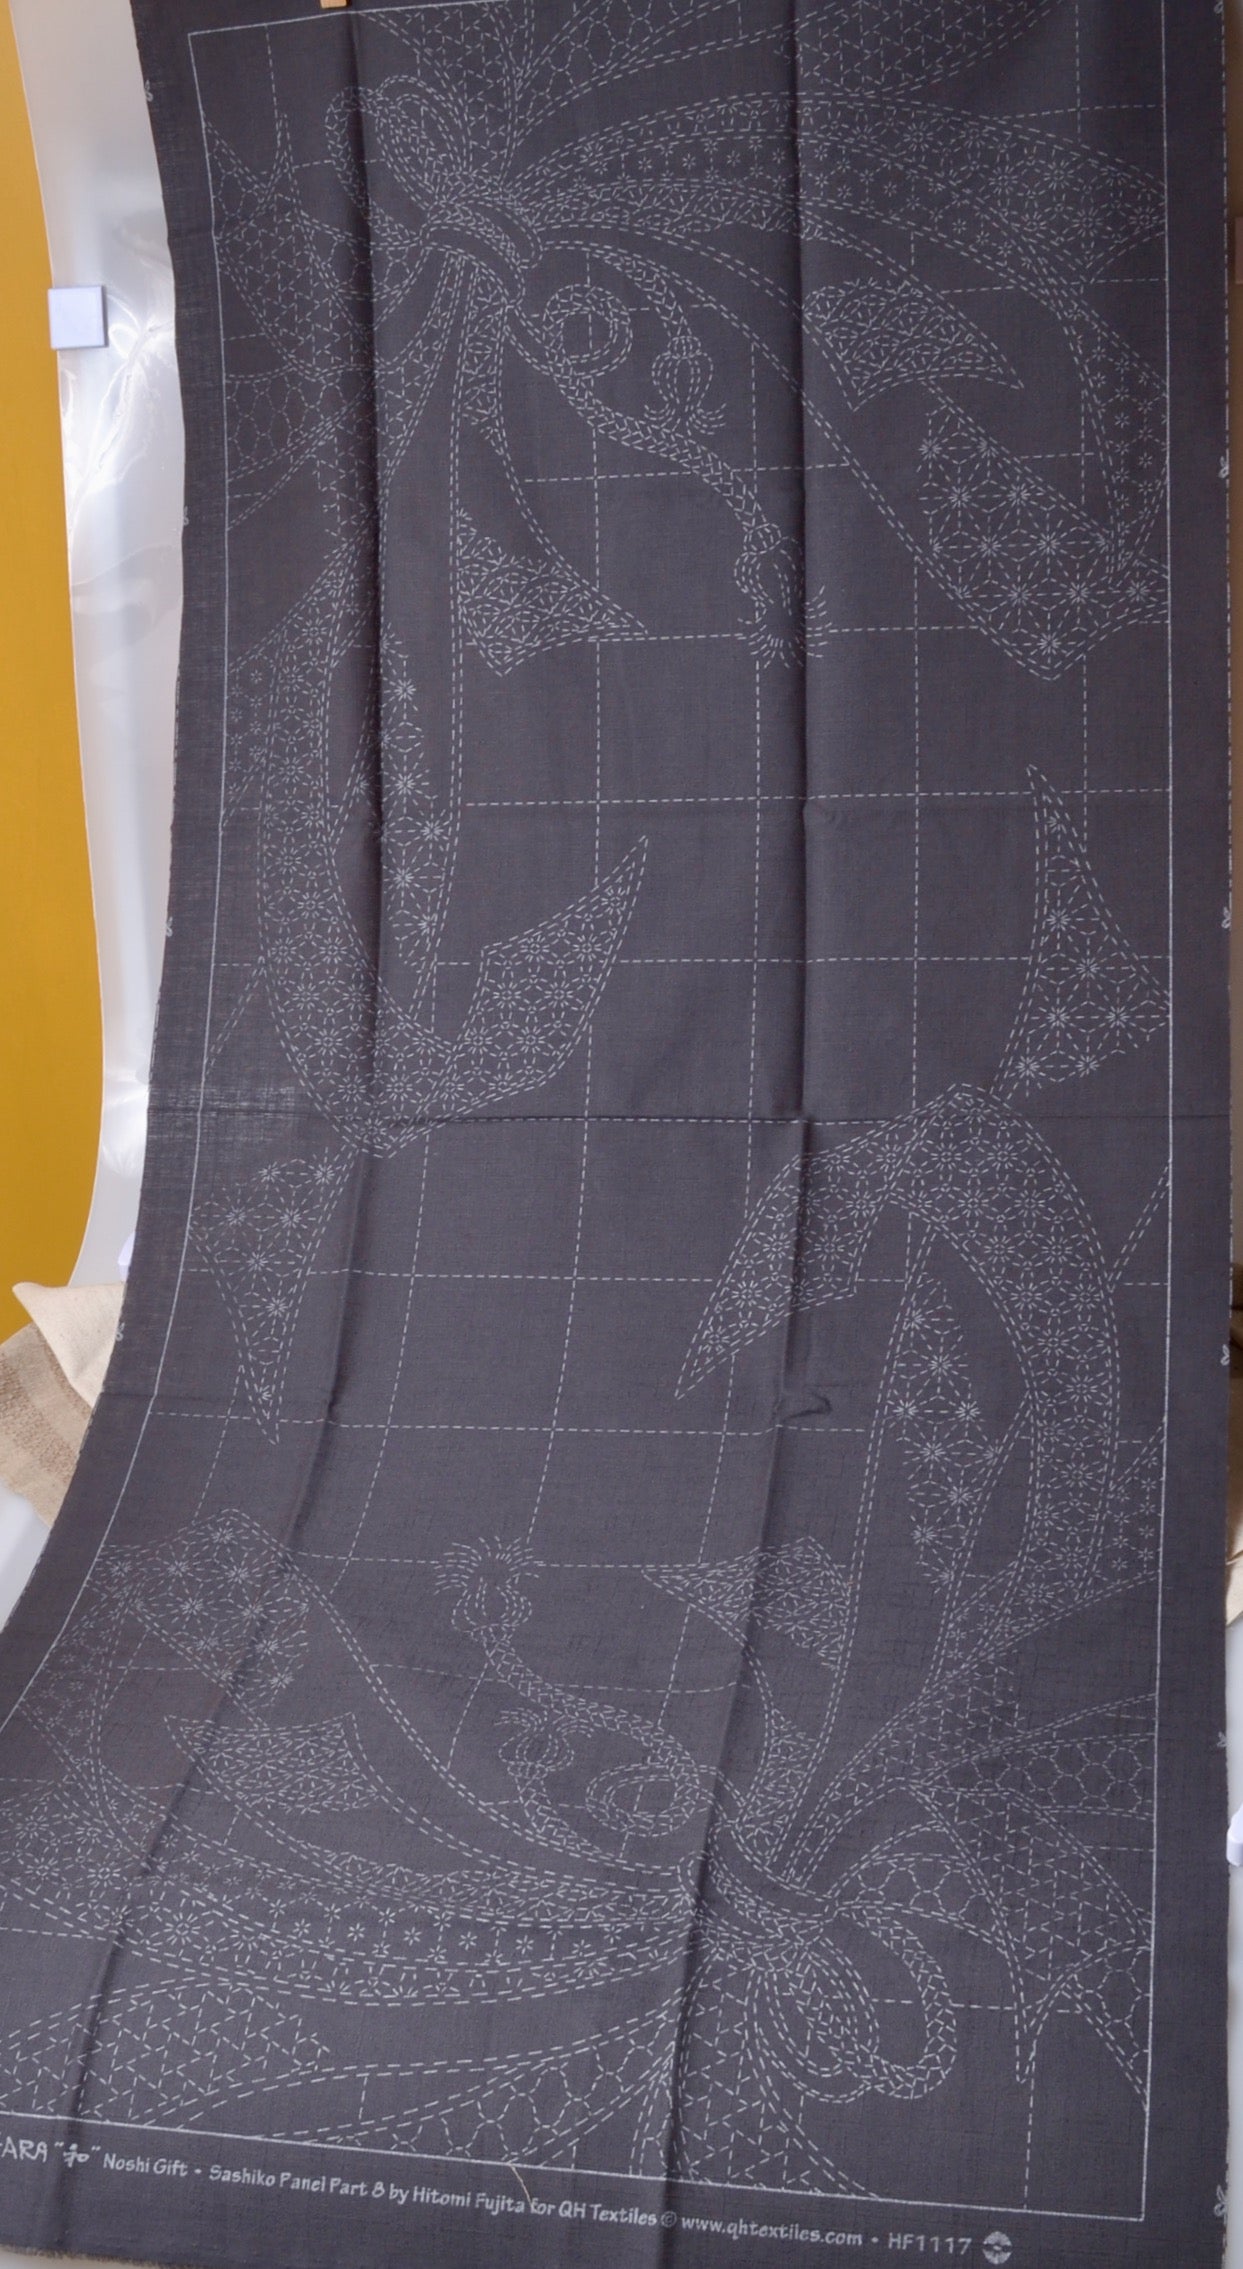 Noshi sashiko panel, wash out print, ready to stitch